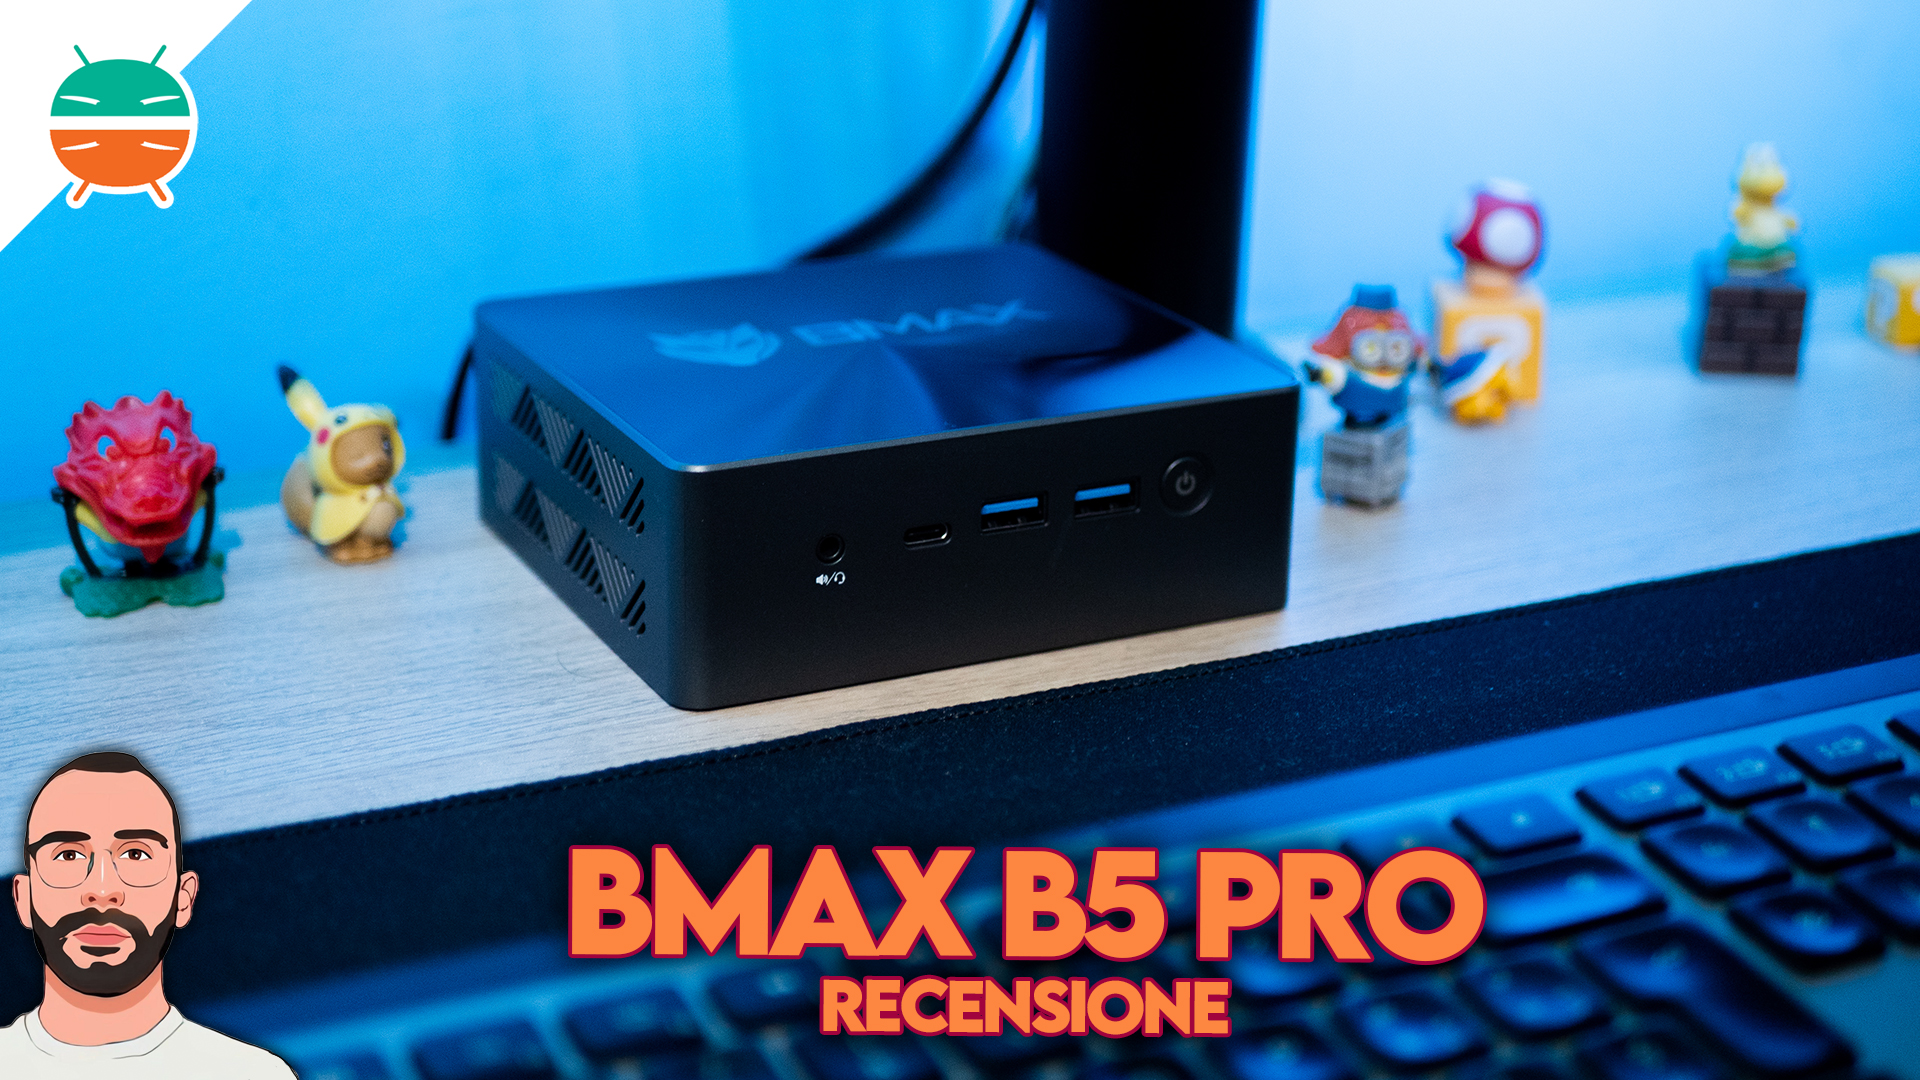 Historical_low] BMAX B6 Pro : Mini PC de Bmax, avec Intel Core i5